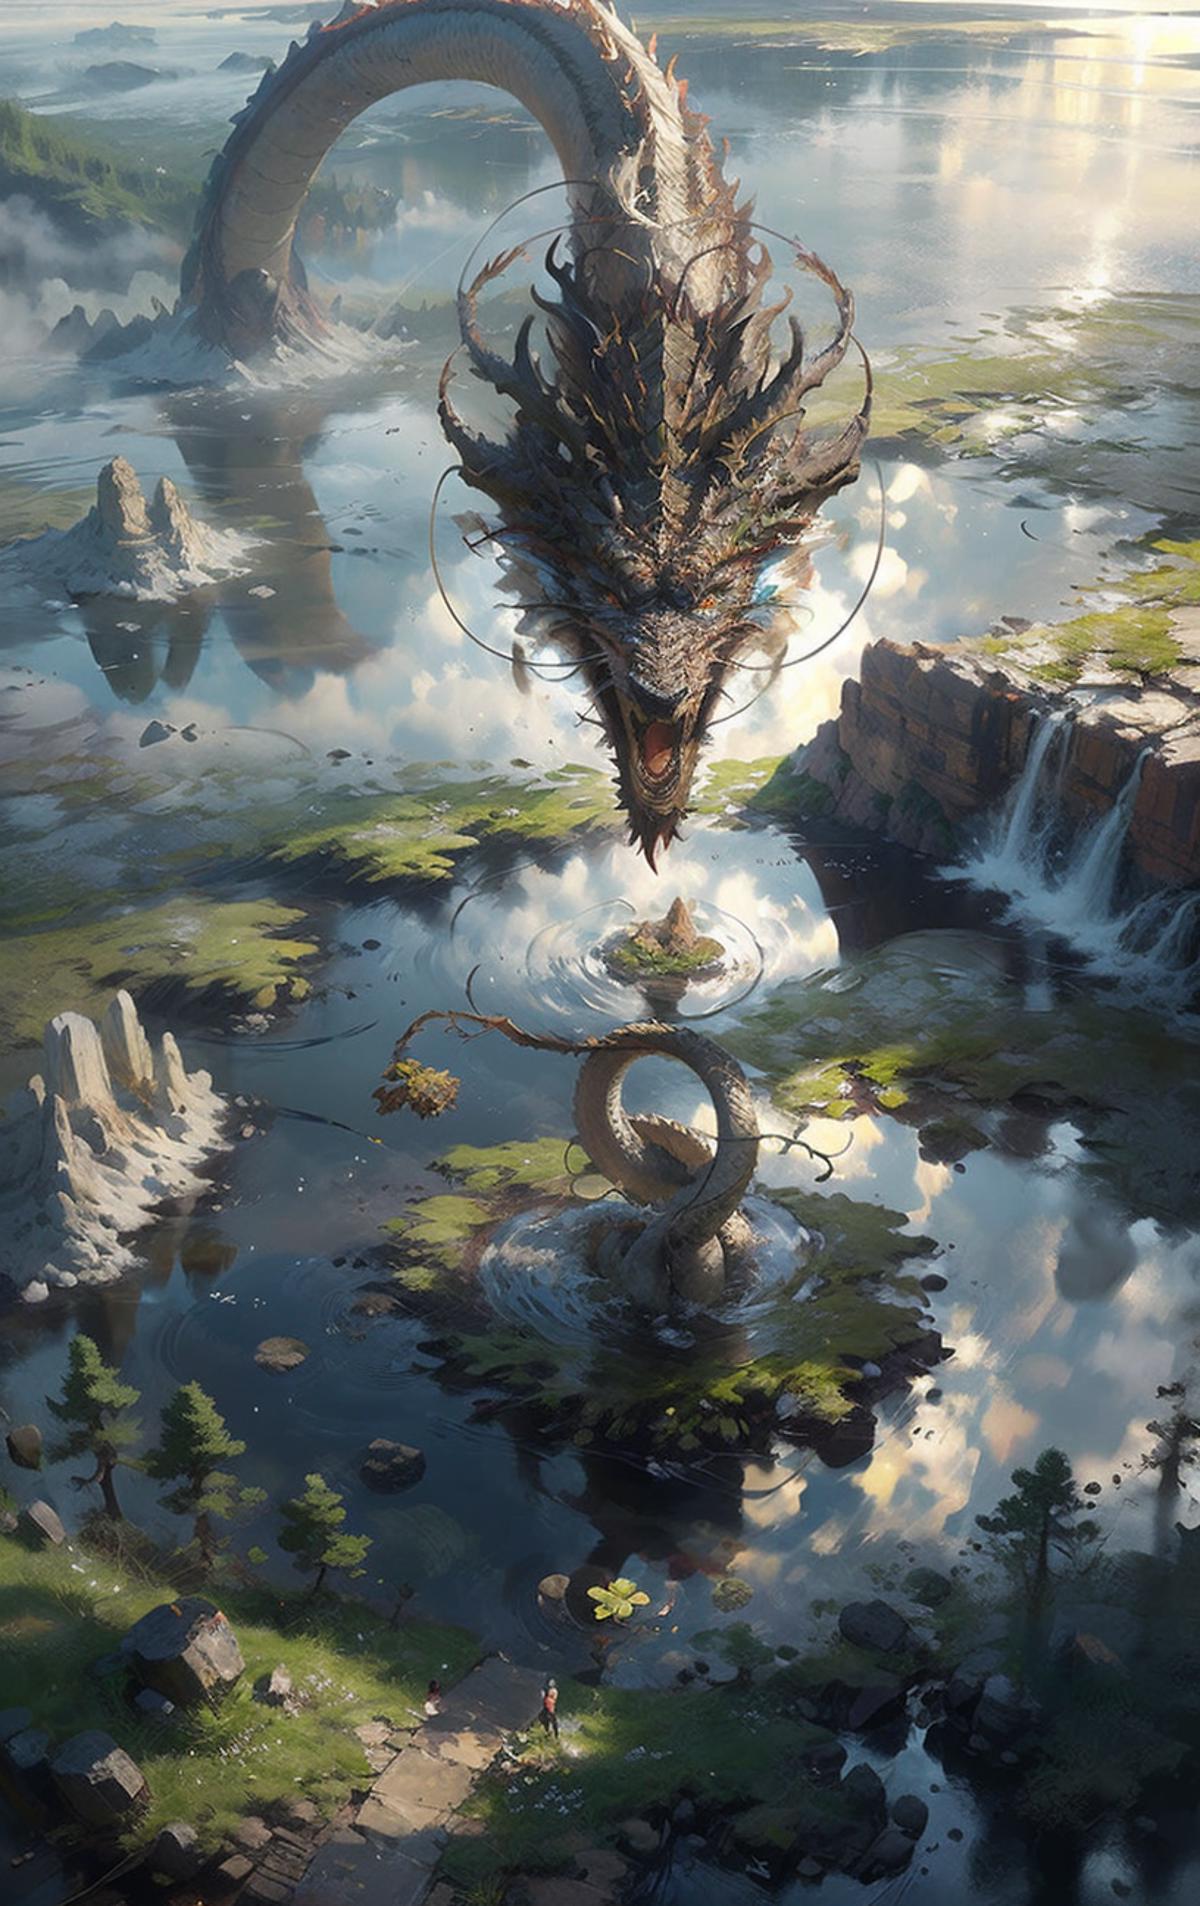 龙神幻想/Chinese dragon Lora image by nuaion